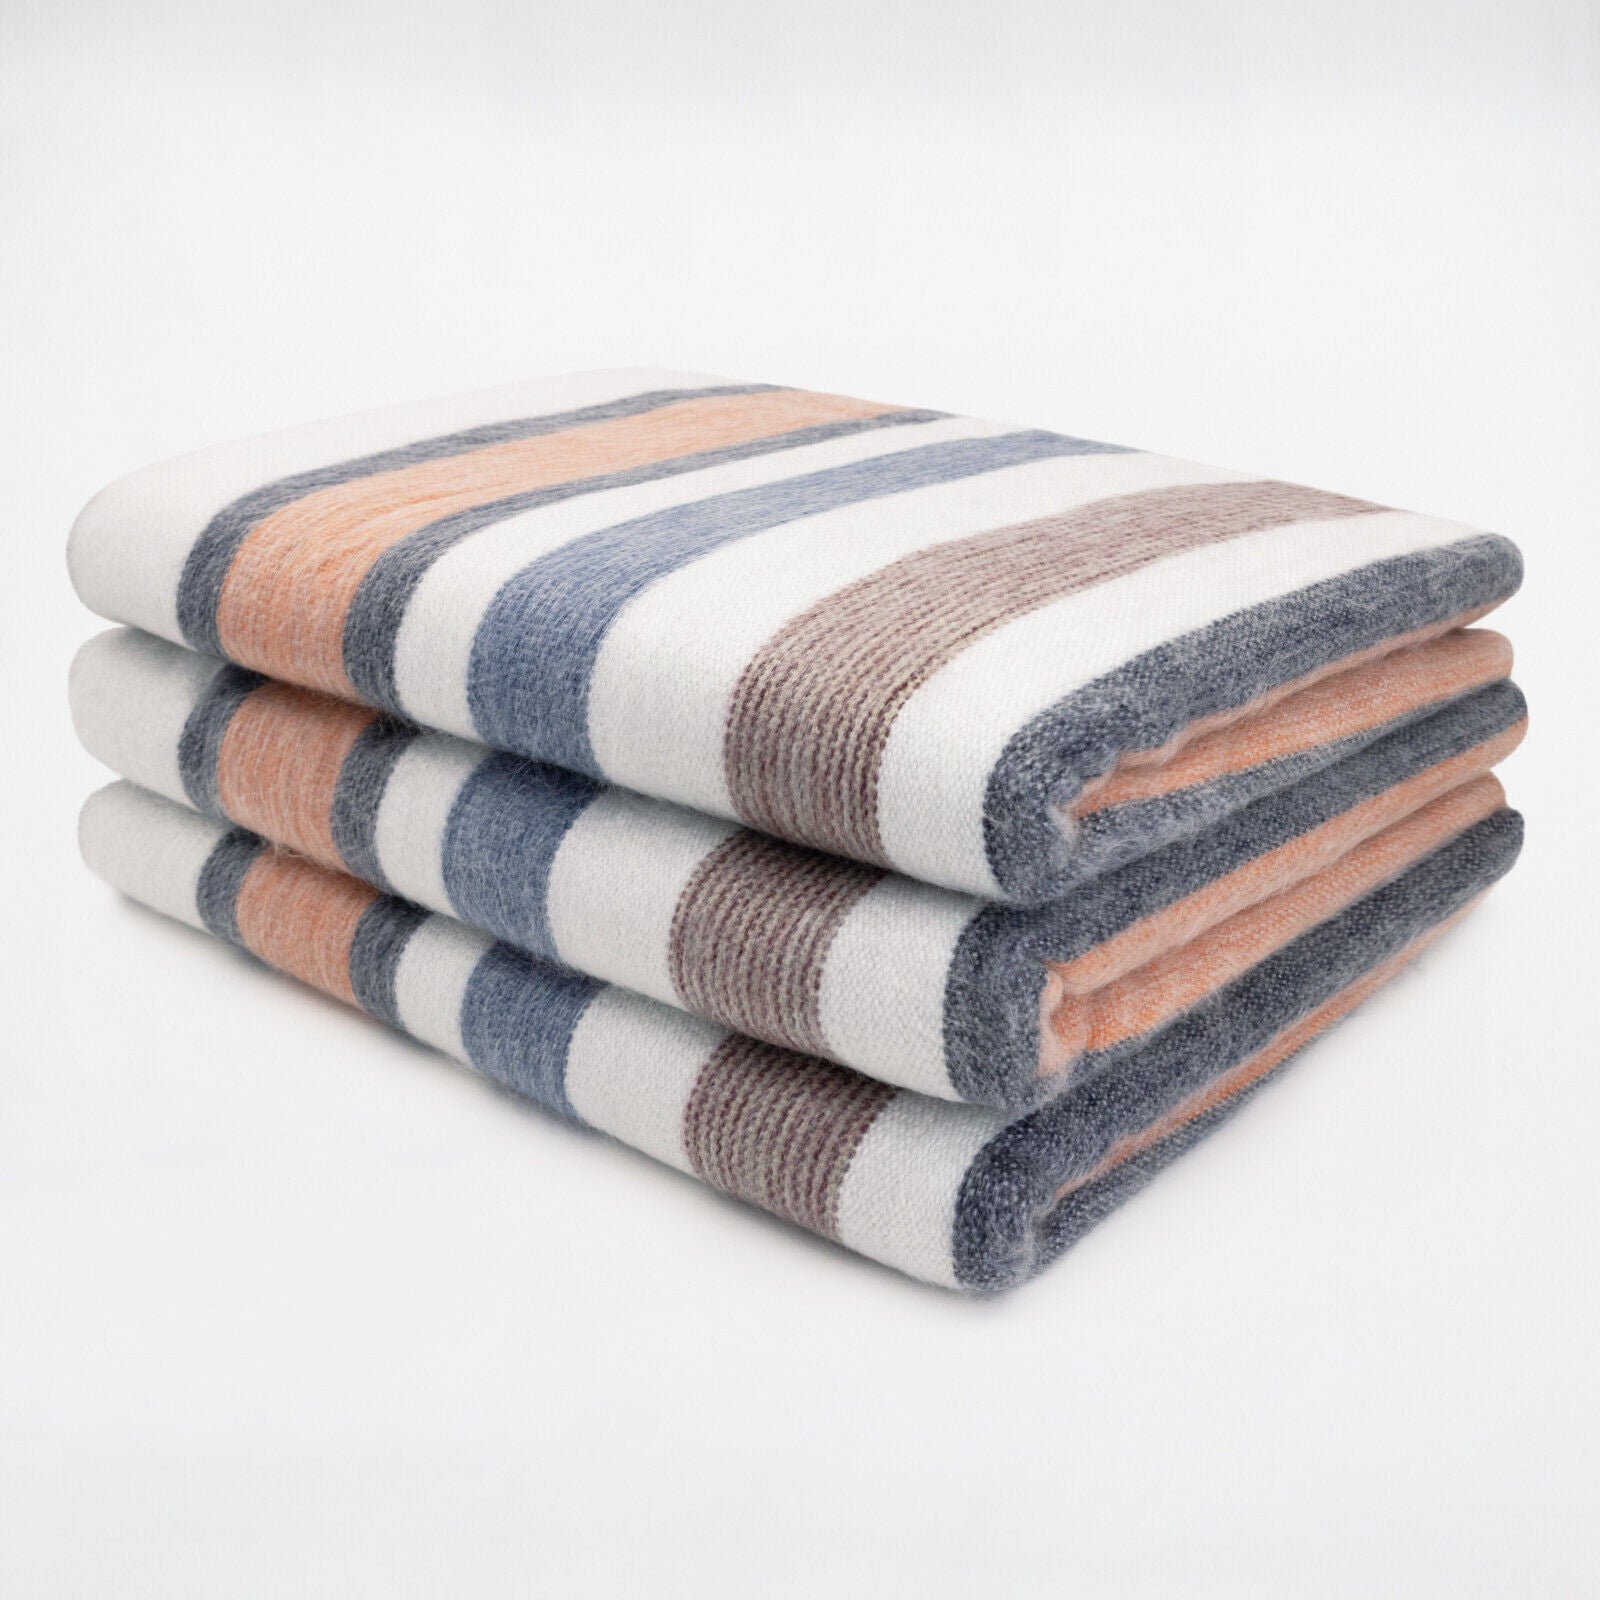 Sopoto - Baby Alpaca Wool Throw Blanket / Sofa Cover - Queen 95 x 67 in - orange pastel colors